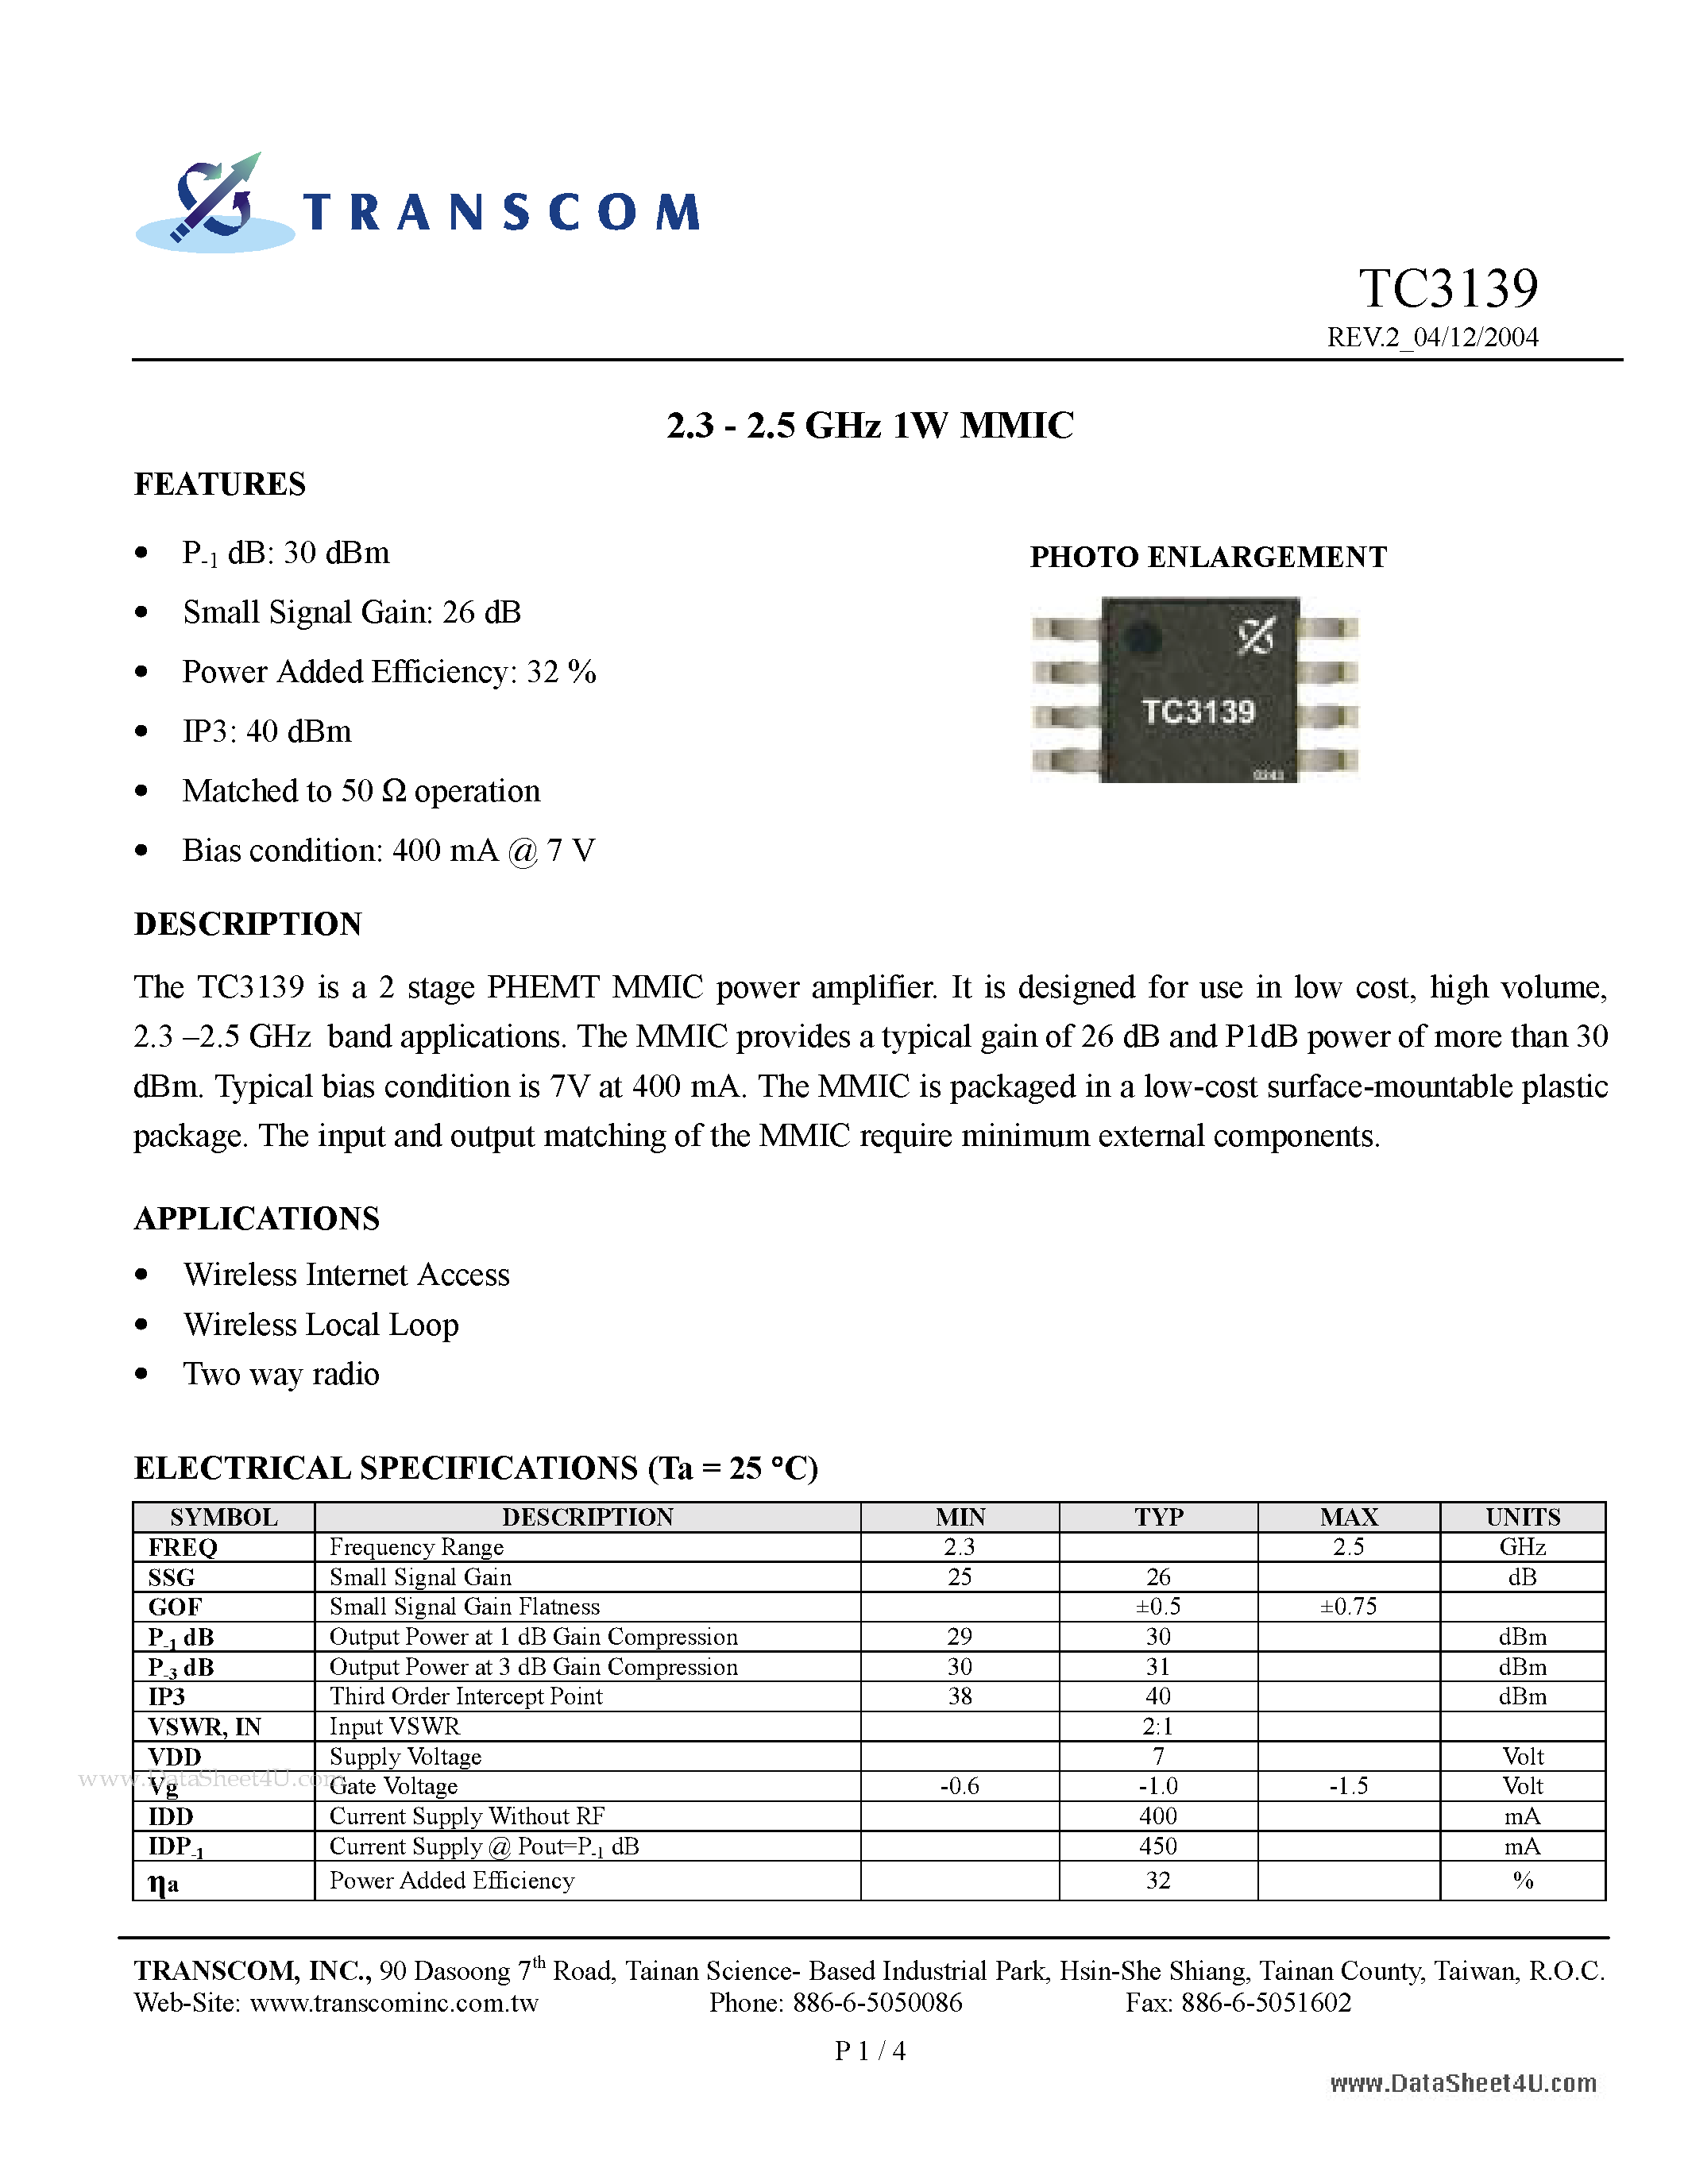 Даташит TC3139 - 2.3 - 2.5 GHz 1W MMIC страница 1